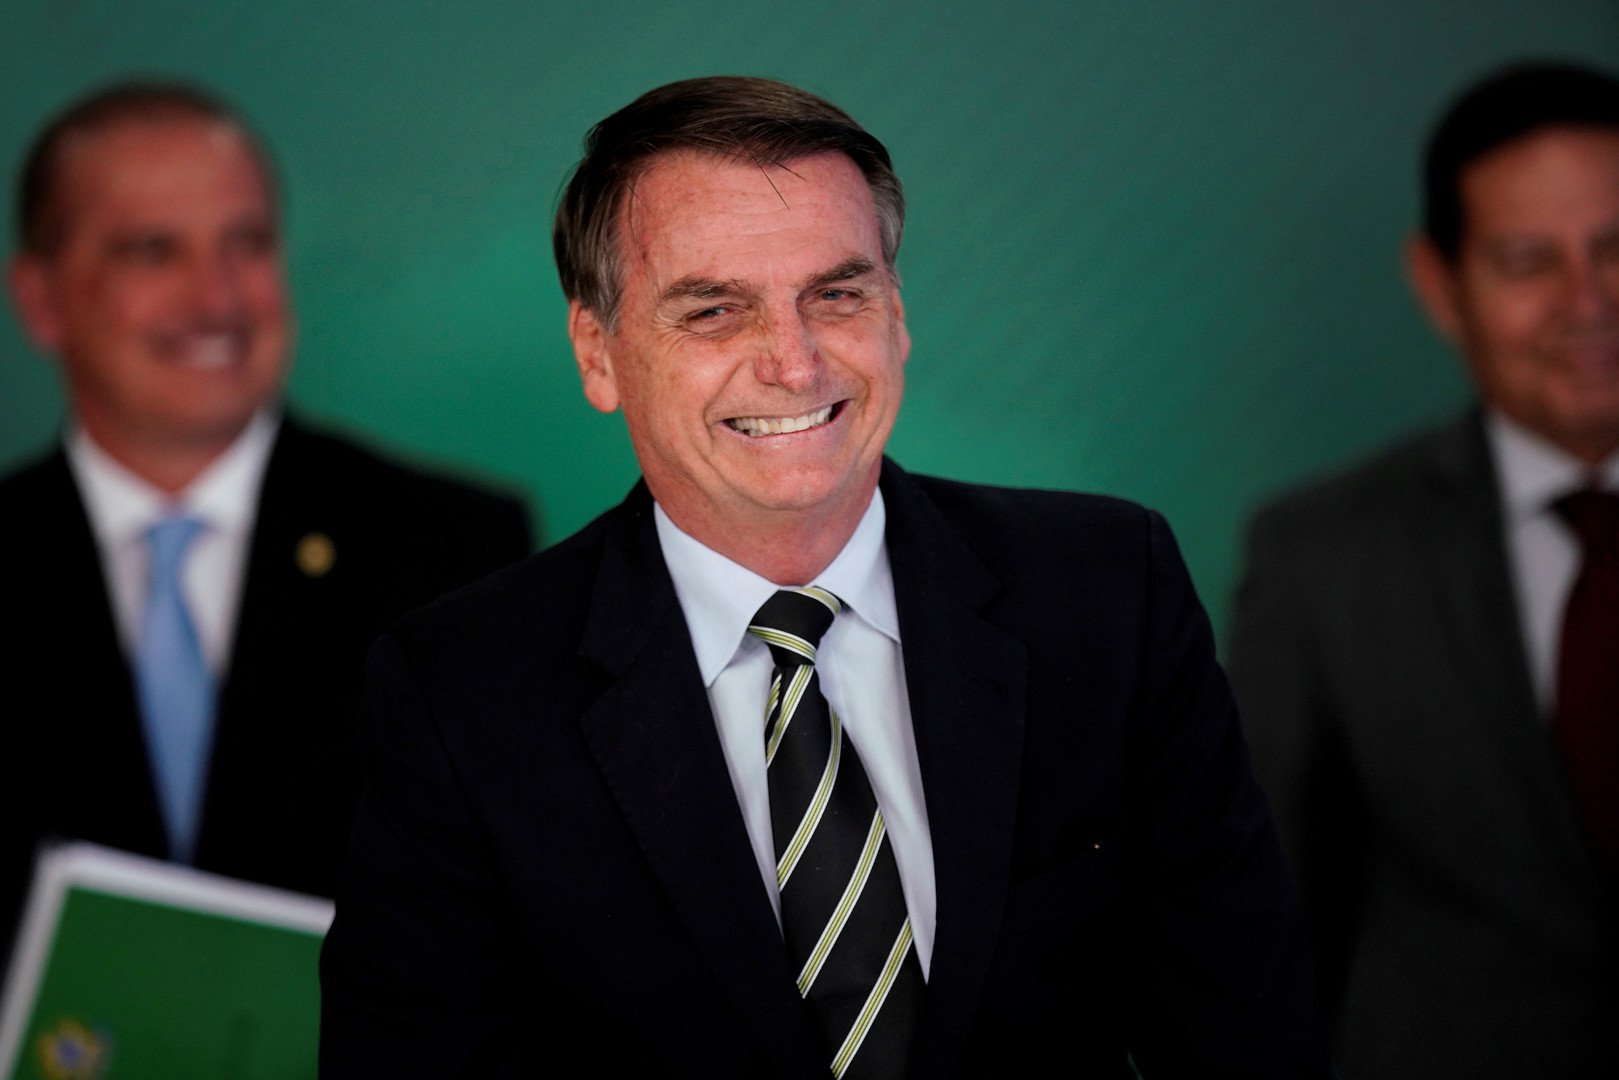 الرئيس البرازيلي يقيل ثالث وزير في غضون 6 أشهر